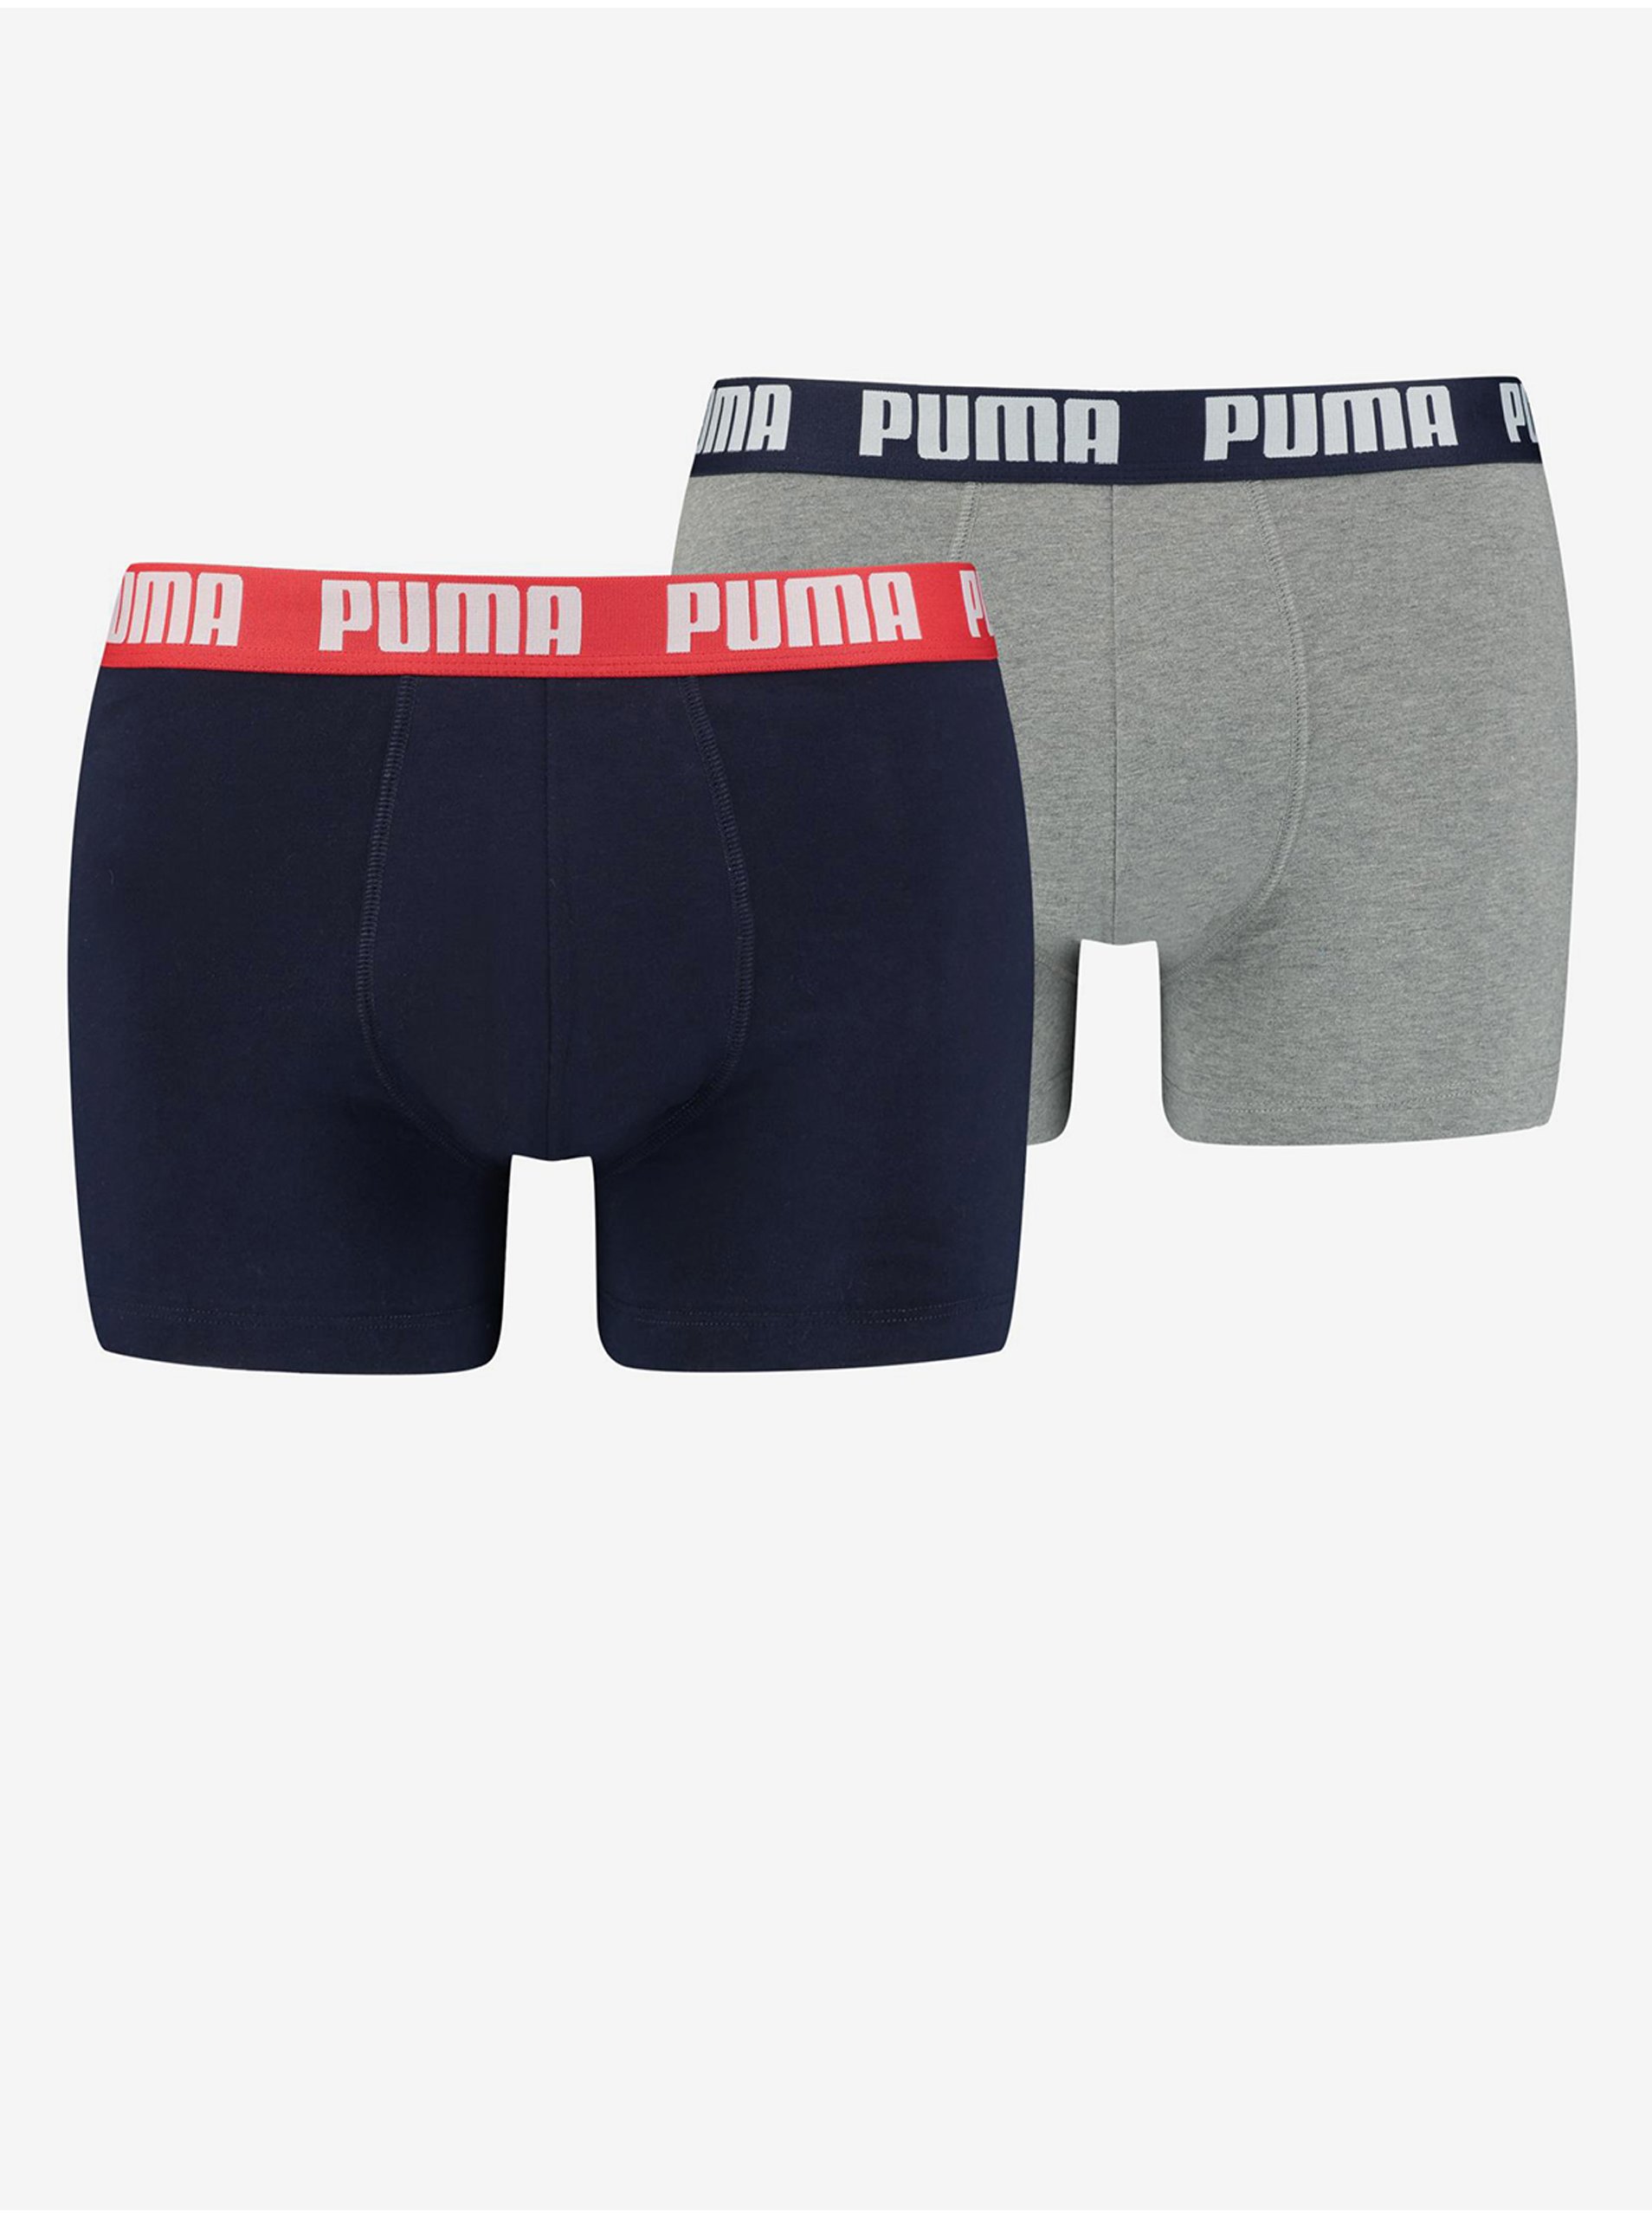 E-shop Sada dvou pánských boxerek ve světle šedé a tmavě modré barvě Puma